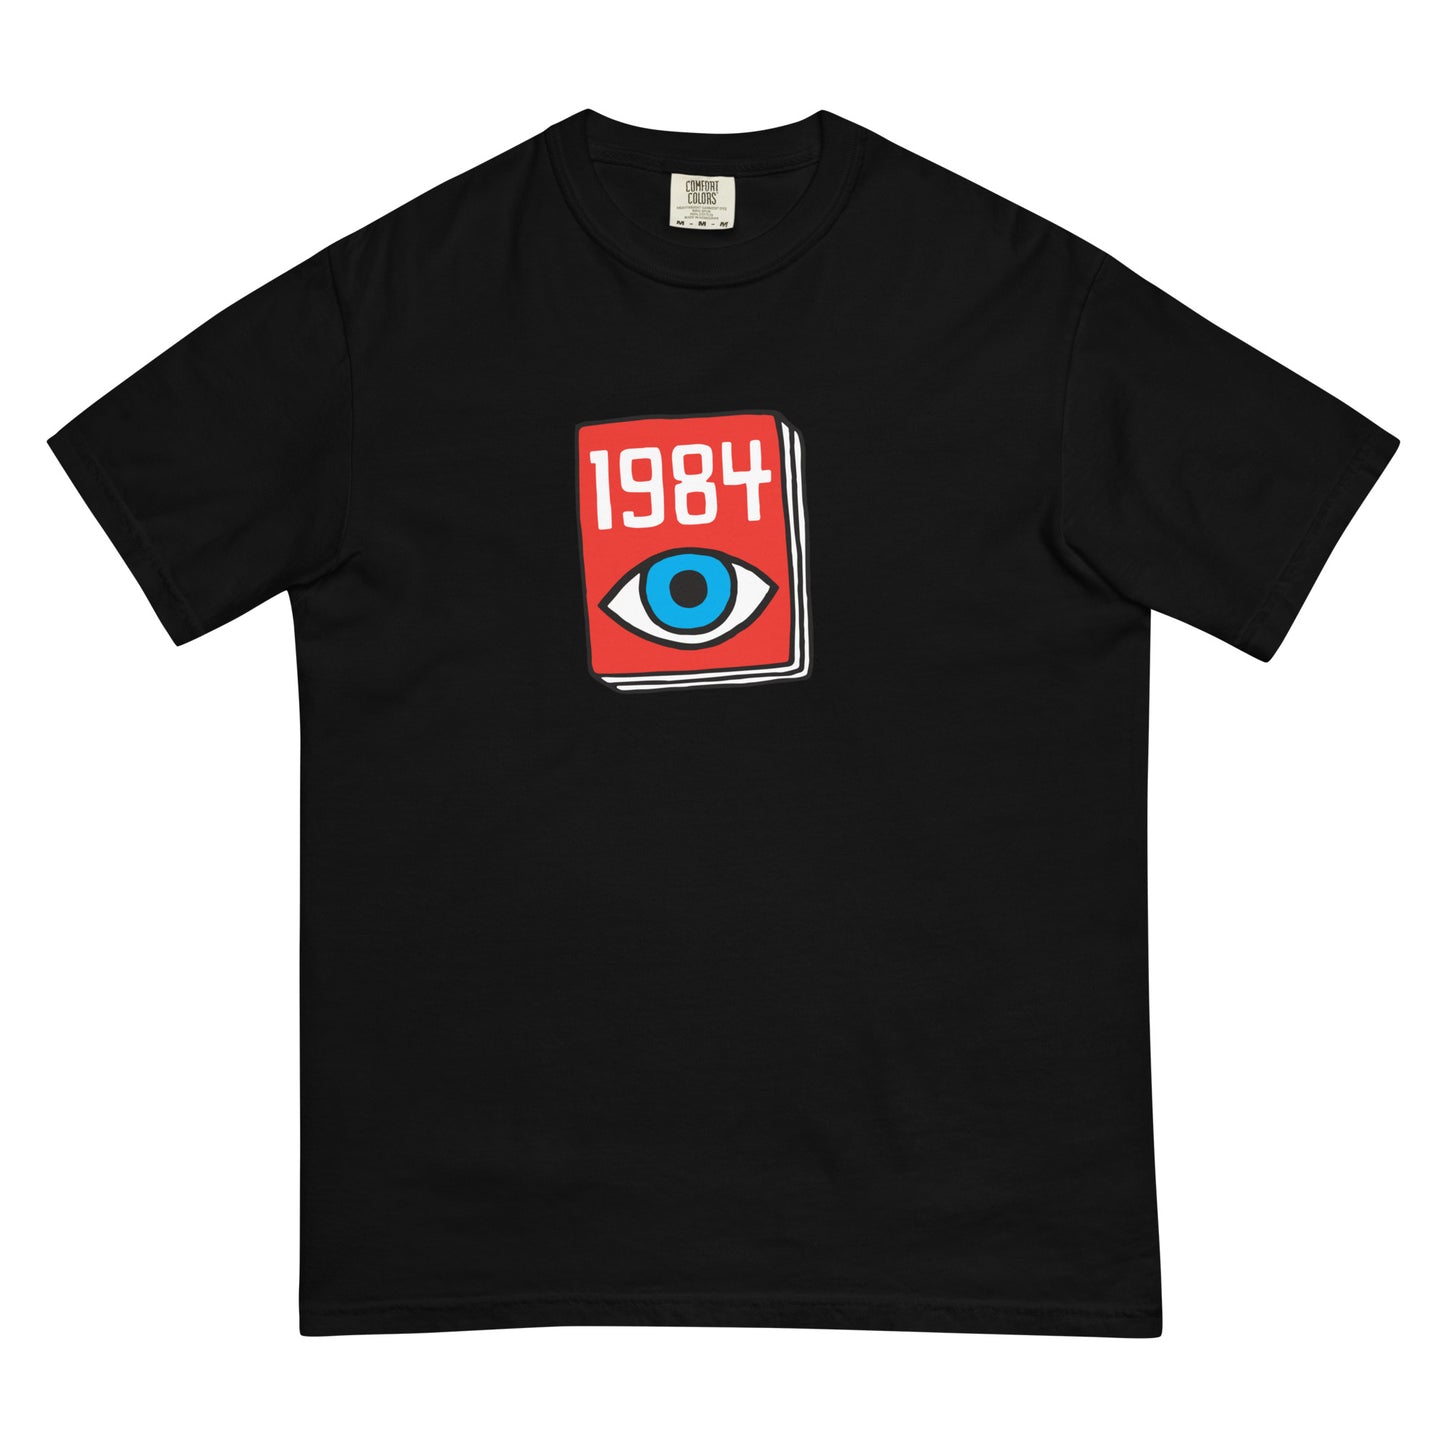 Book shirt: 1984